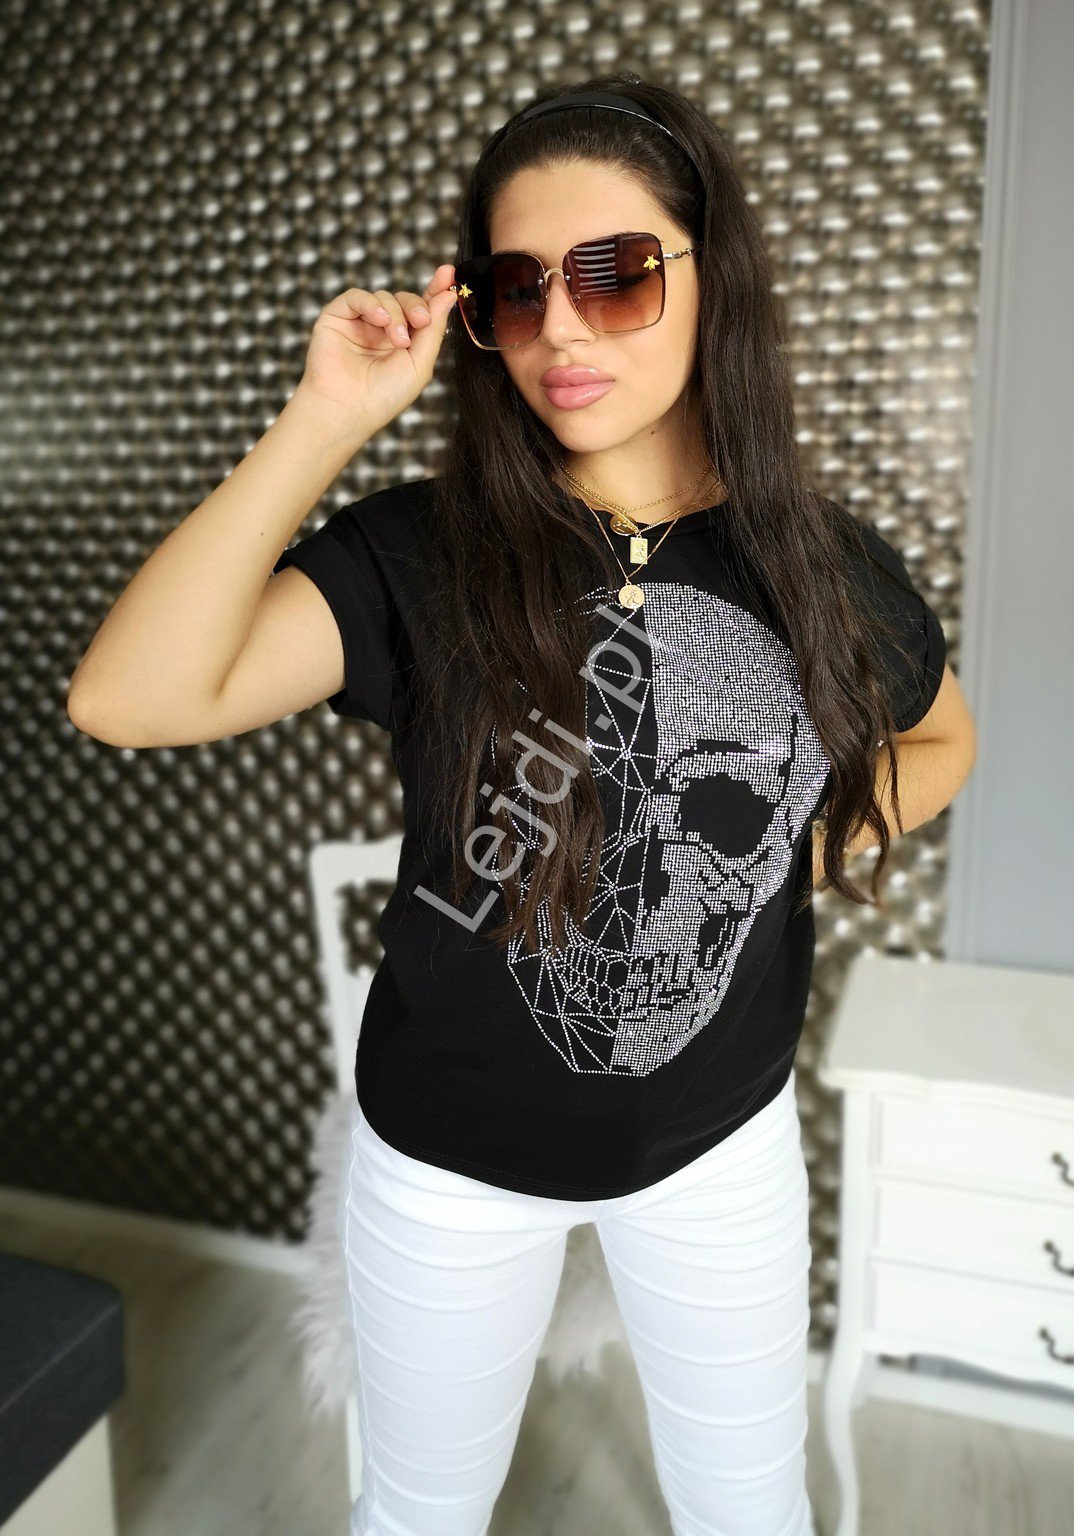 Czarny t-shirt skull z kryształkami, bawełniana koszulka z czaszką kryształkową